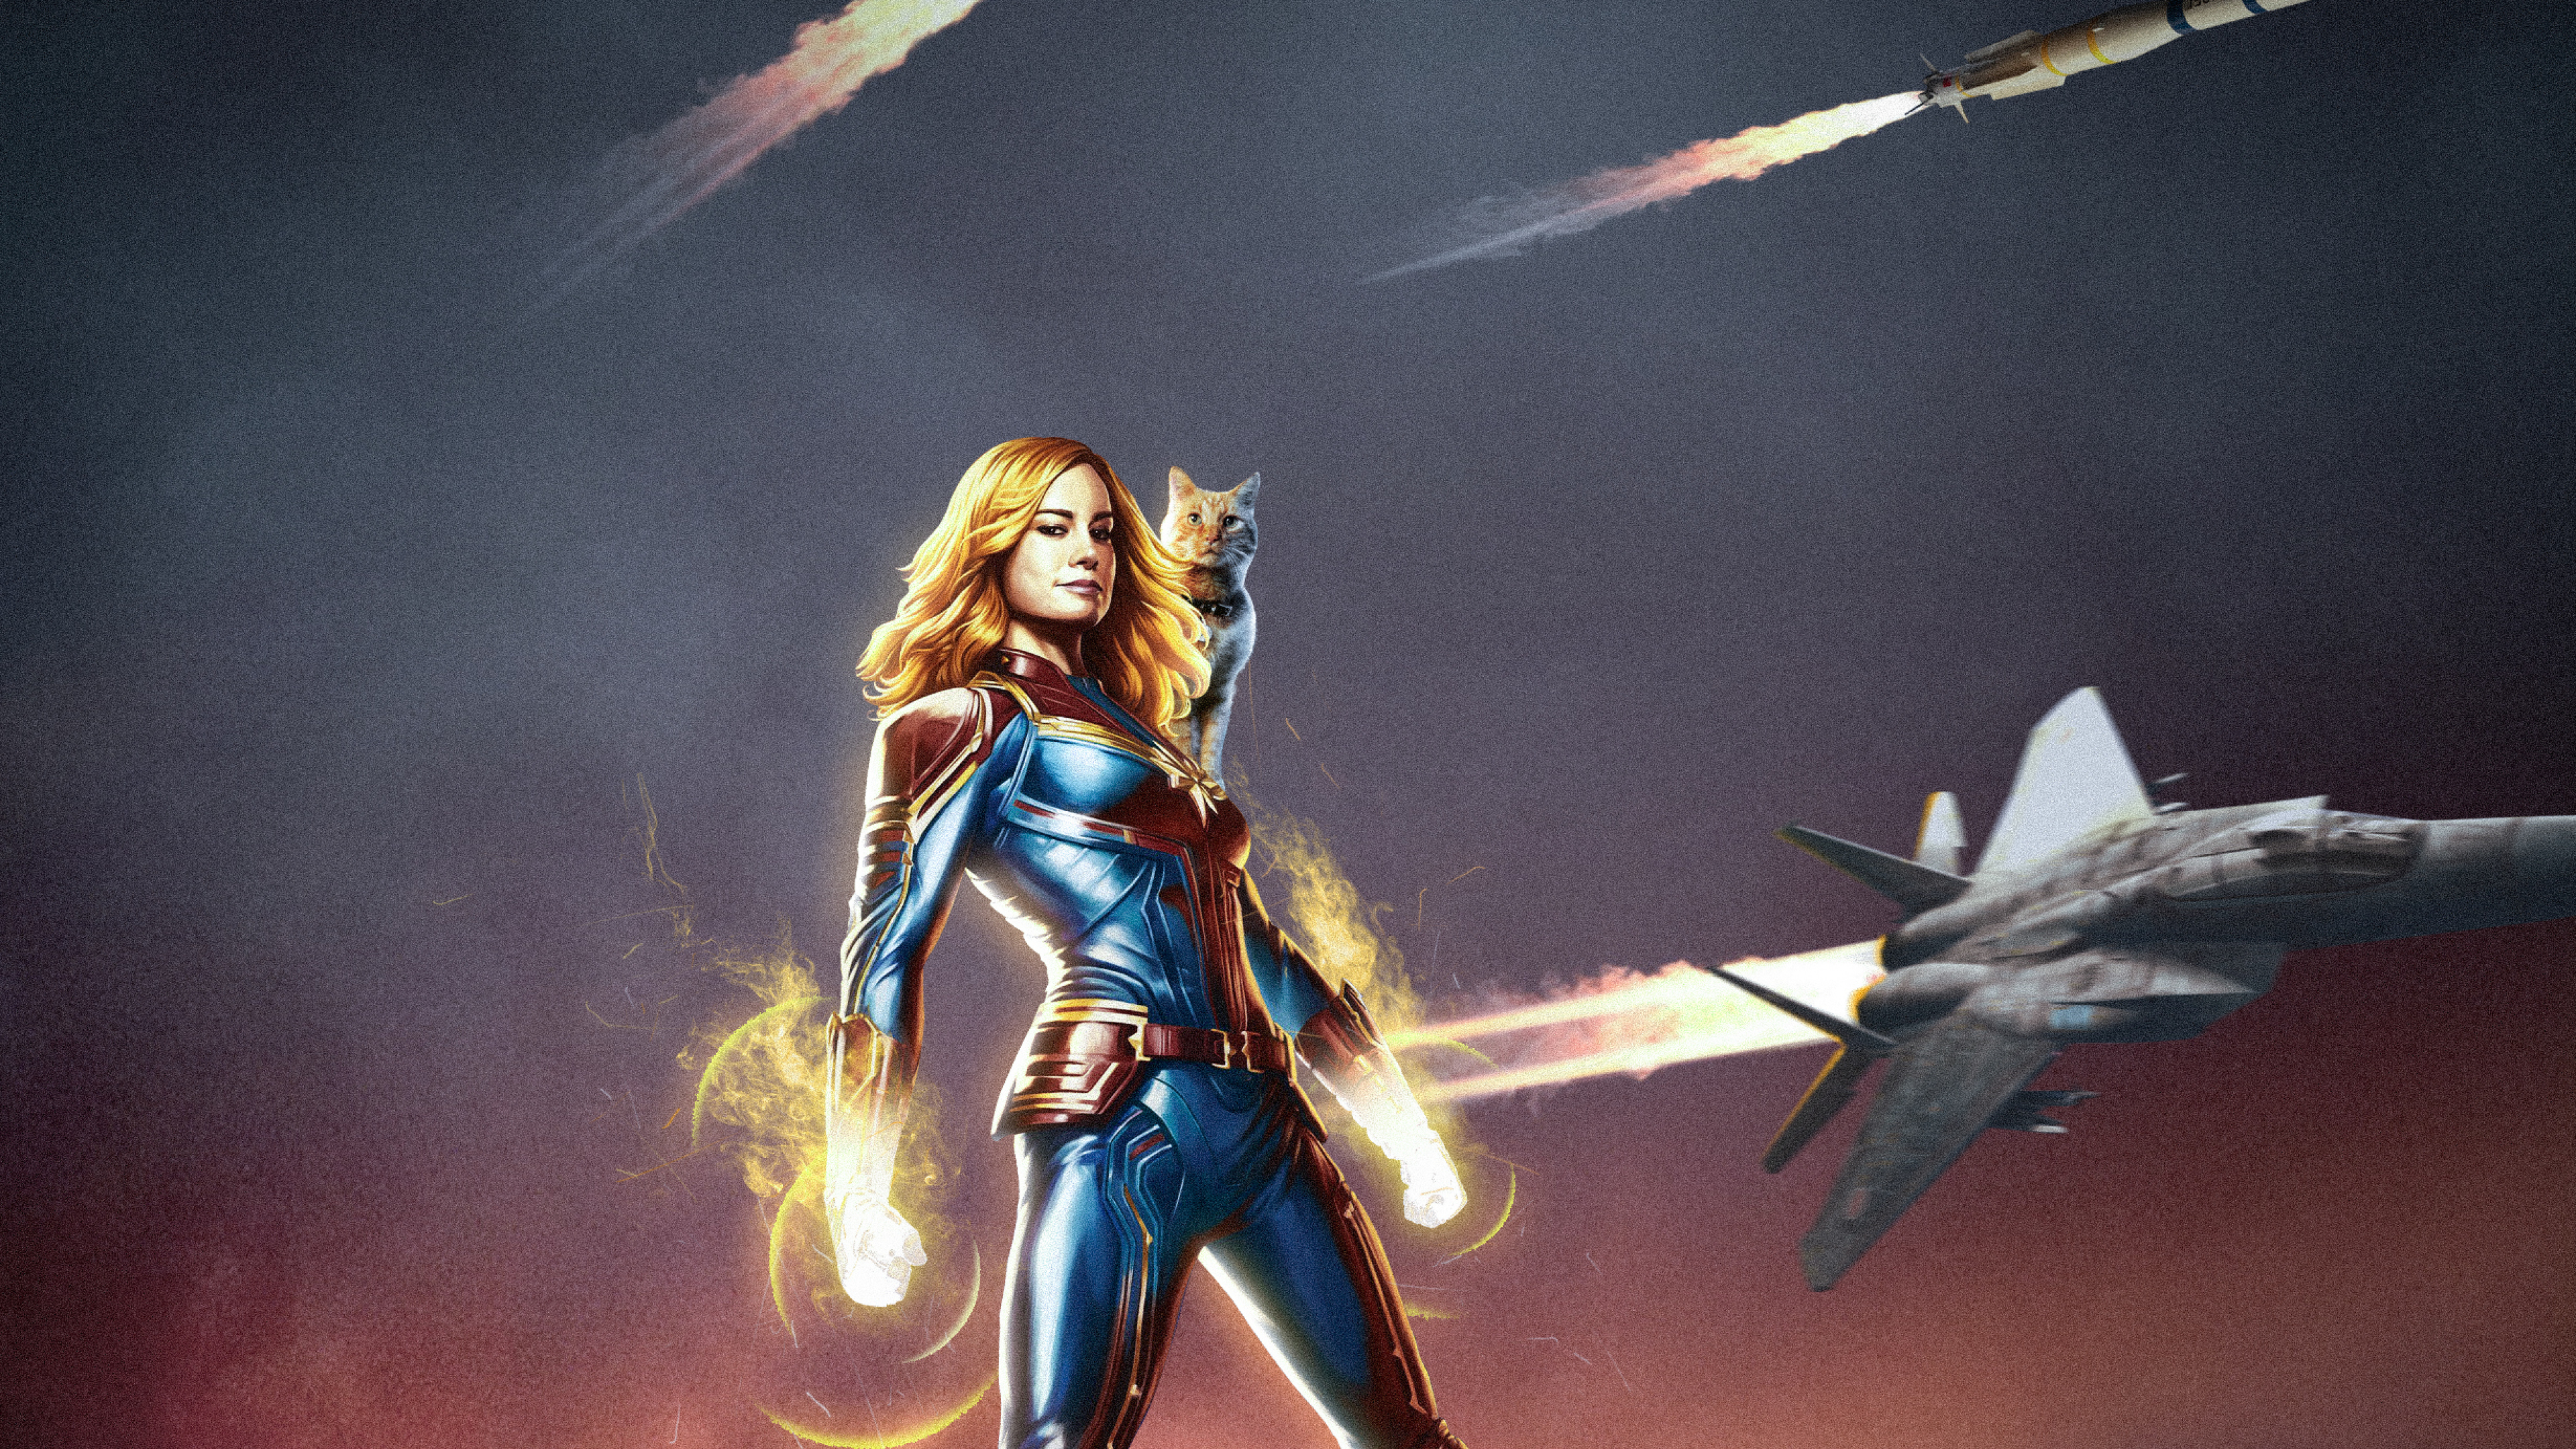 Captain Marvel Movie Poster Art (3840x2160) Resolution Wallpaper.